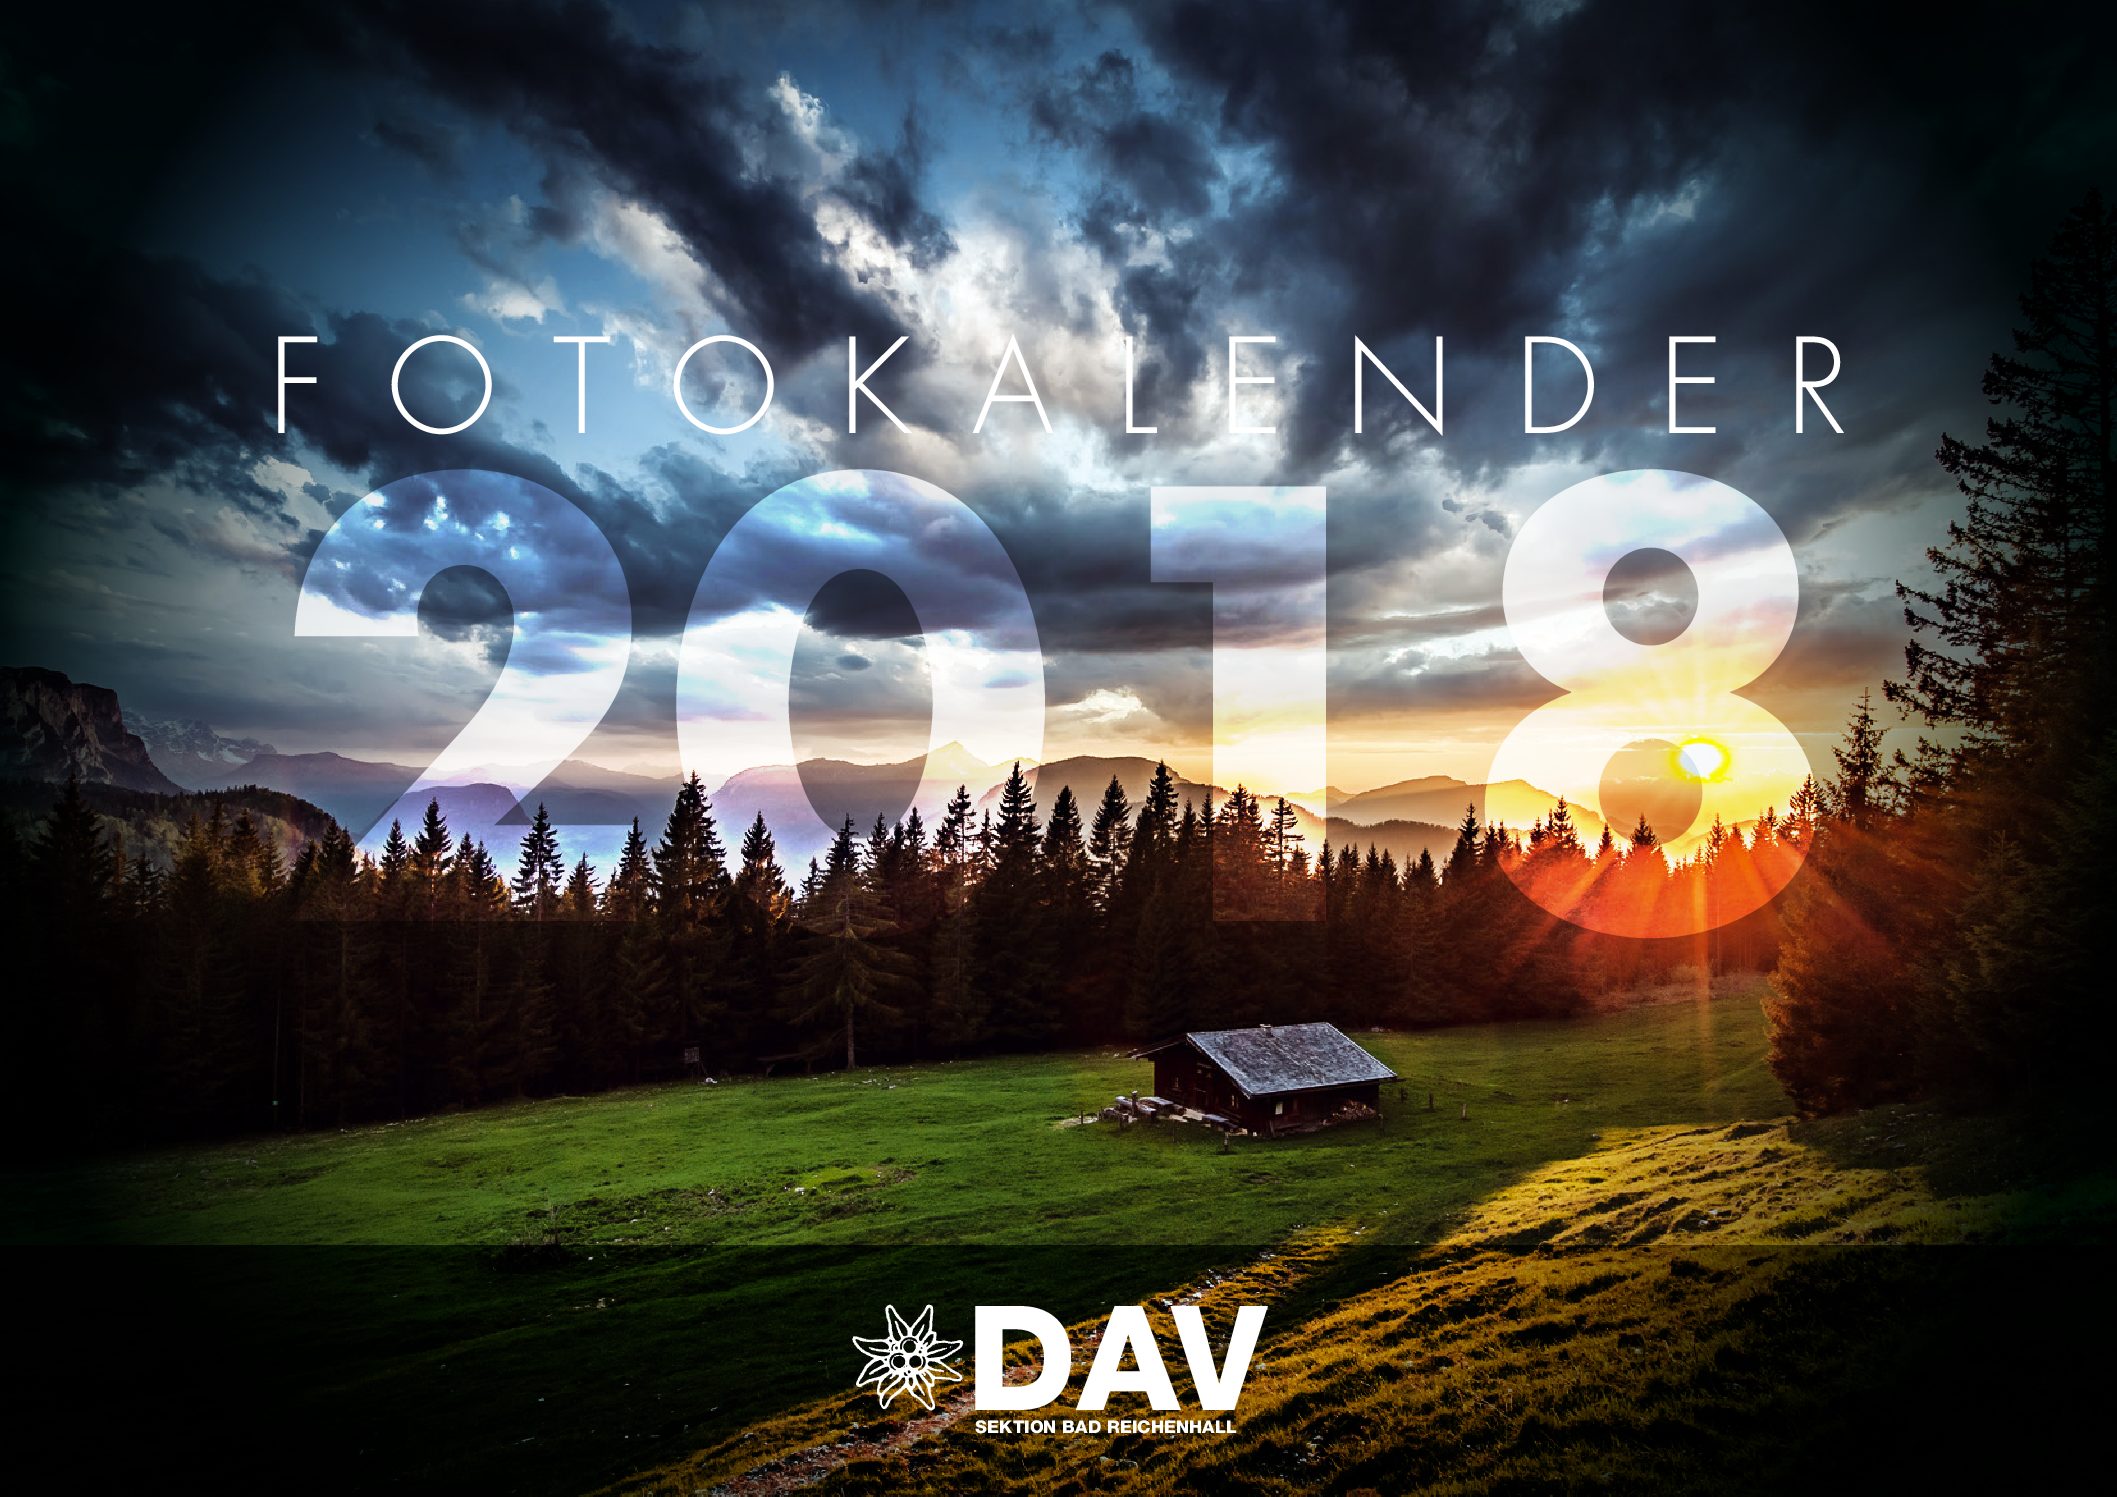 Kalender 2018 der DAV-Sektion Bad Reichenhall neu erschienen!